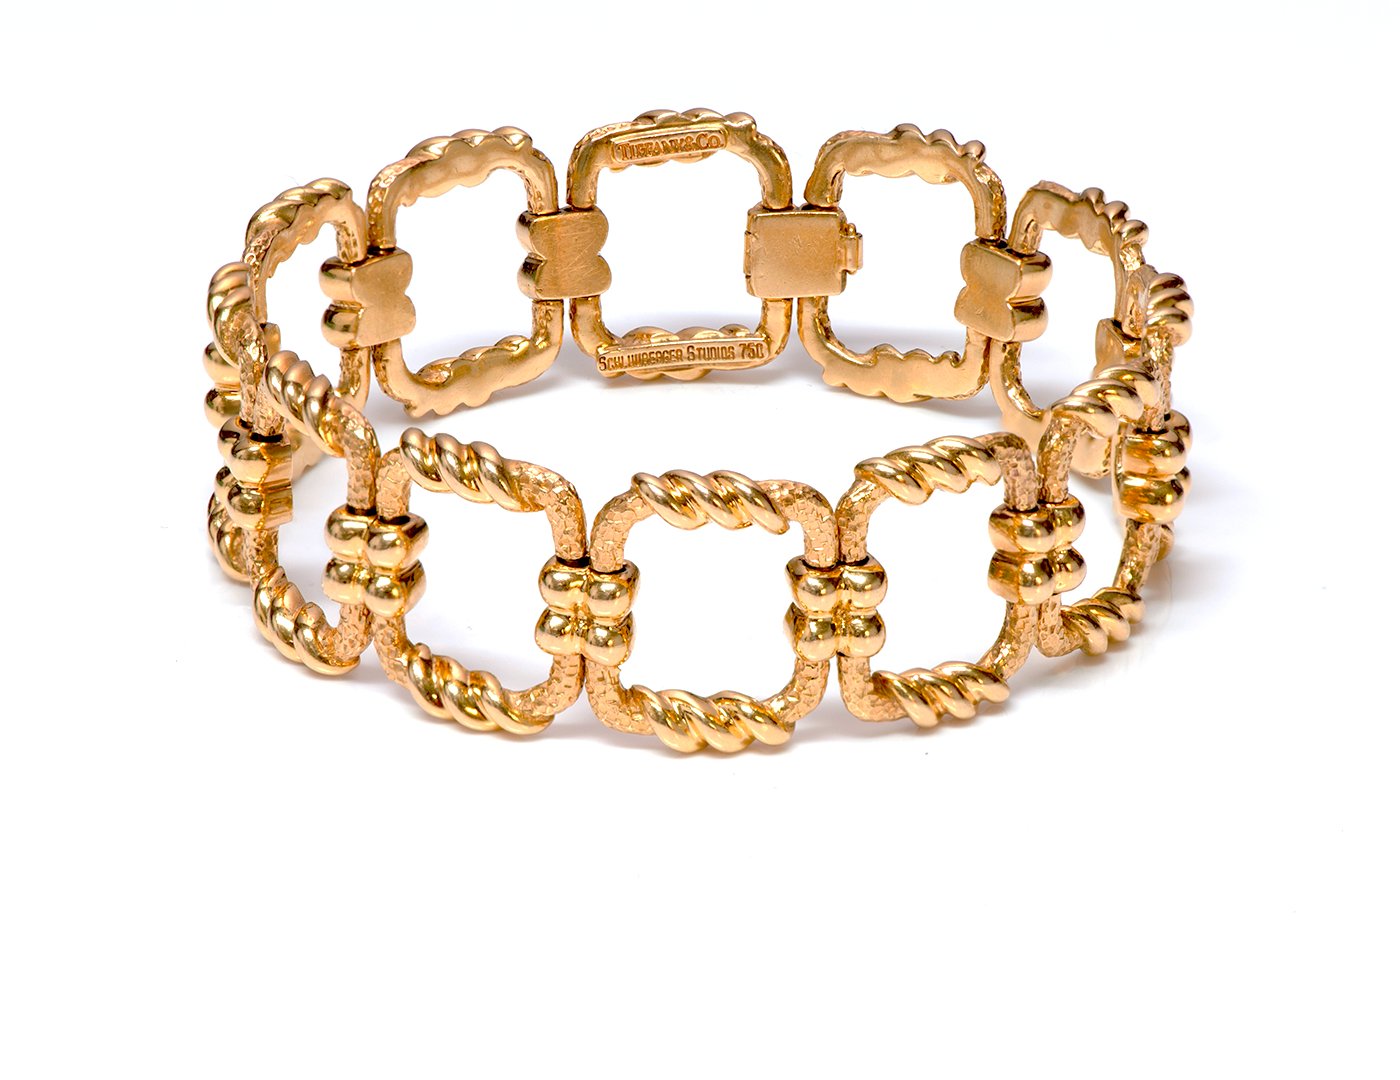 Tiffany & Co. Jewelry Rings Earrings Bracelets - DSF Antique Jewelry